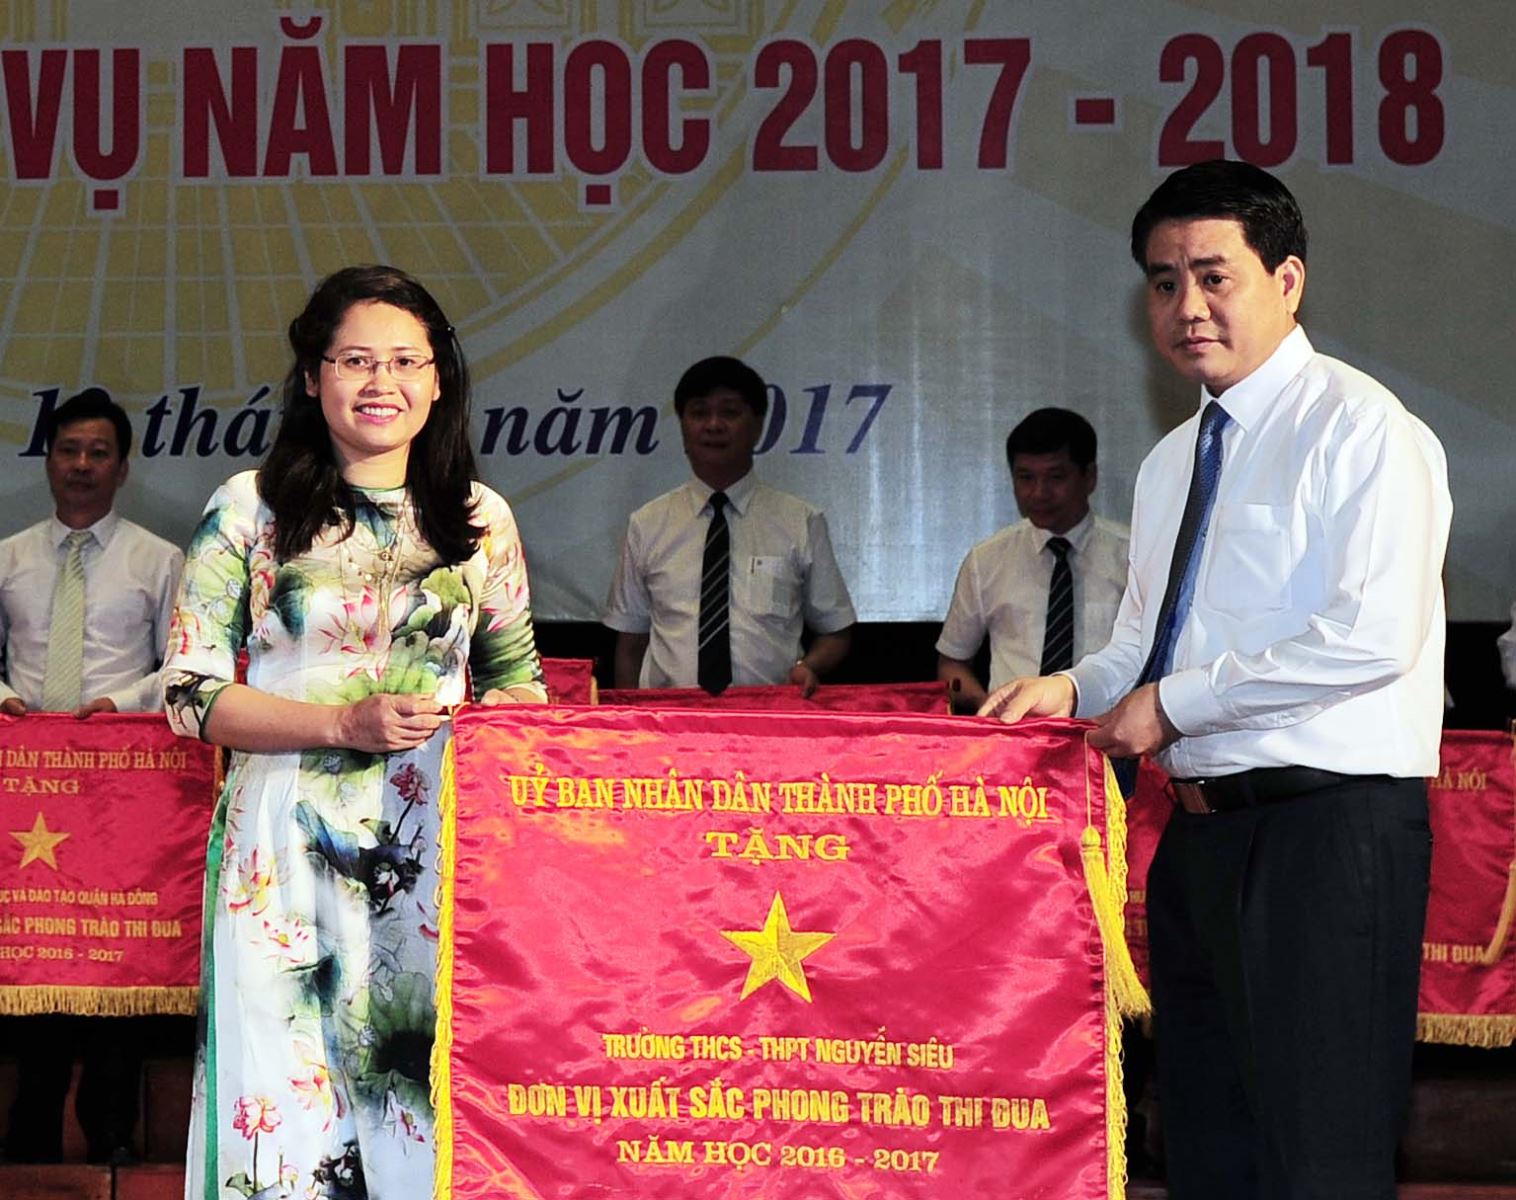 Trường Nguyễn Siêu - đơn vị xuất sắc phong trào thi đua 2016-2017